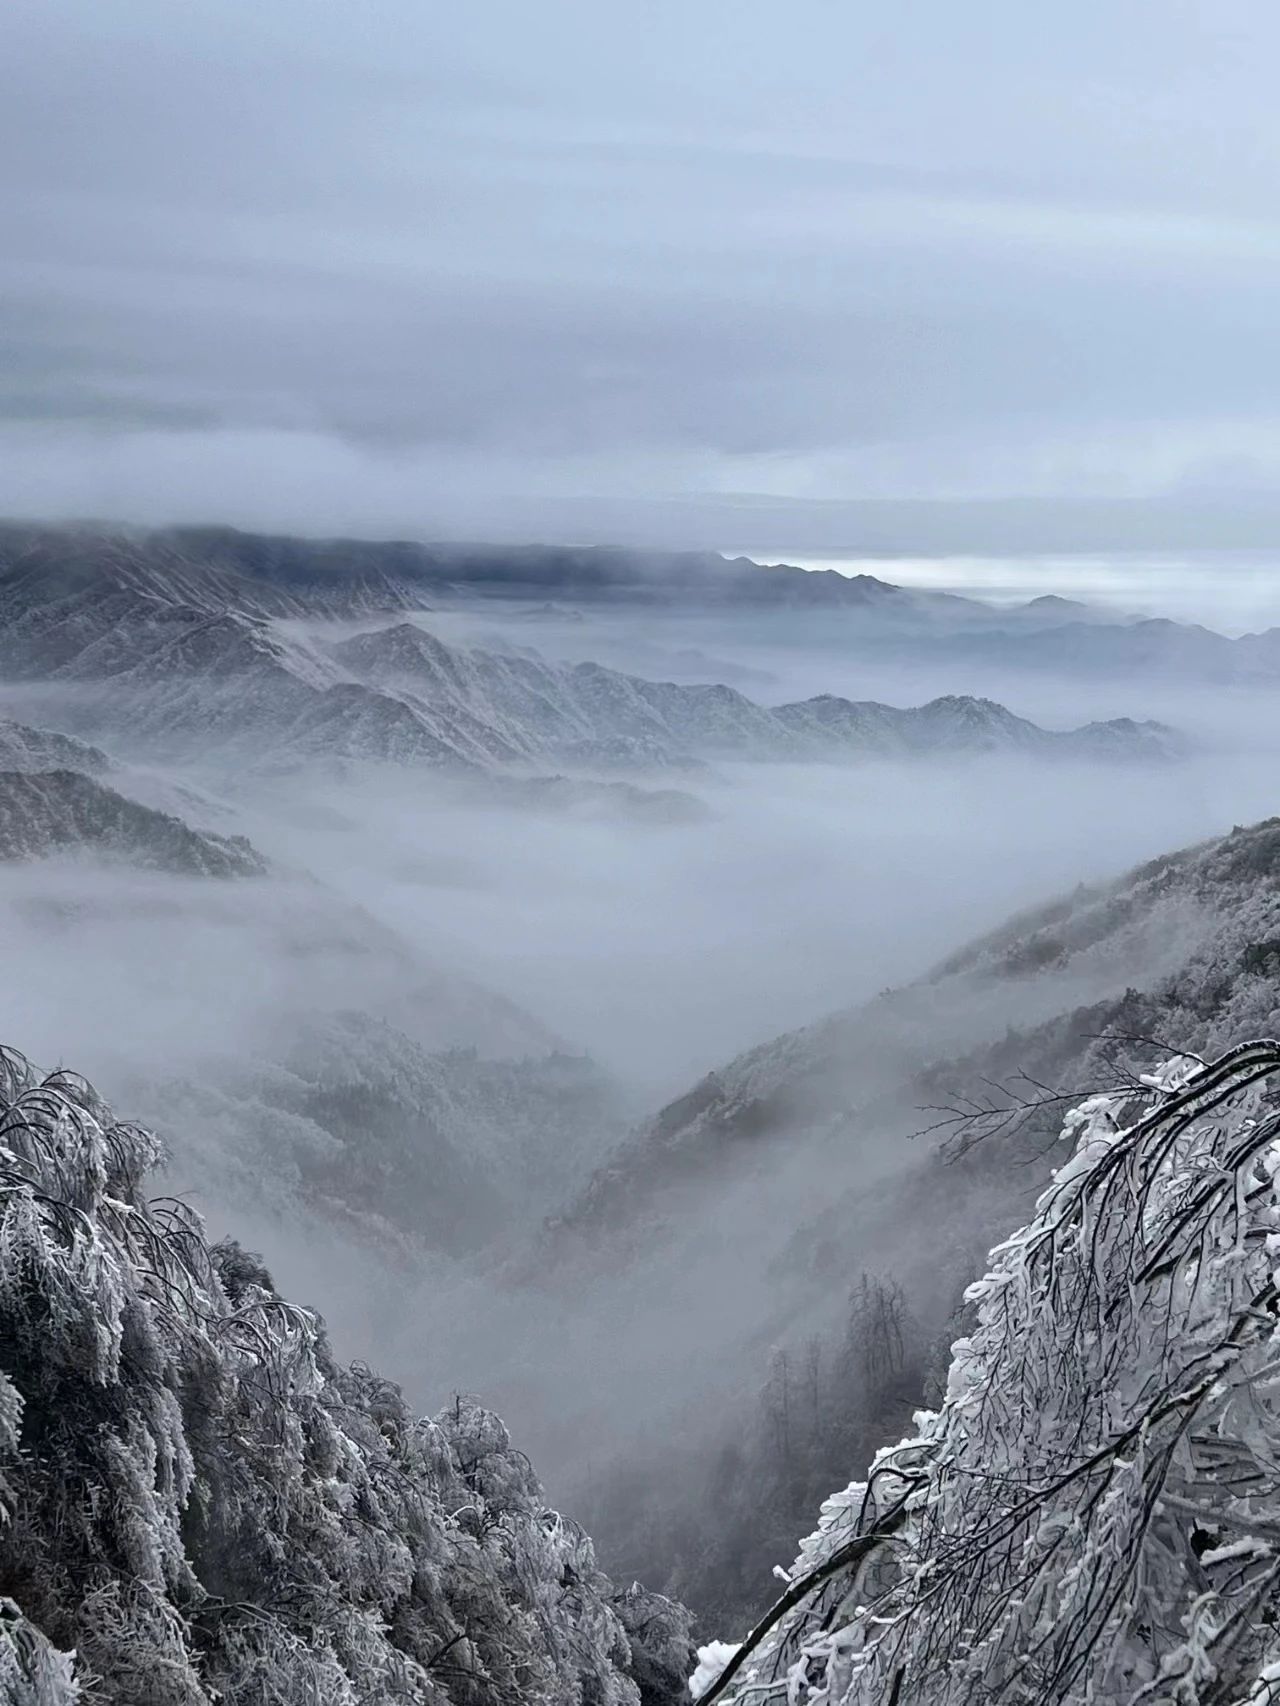 桂林资源隘门界的冬天，是大自然最唯美的时刻之一。